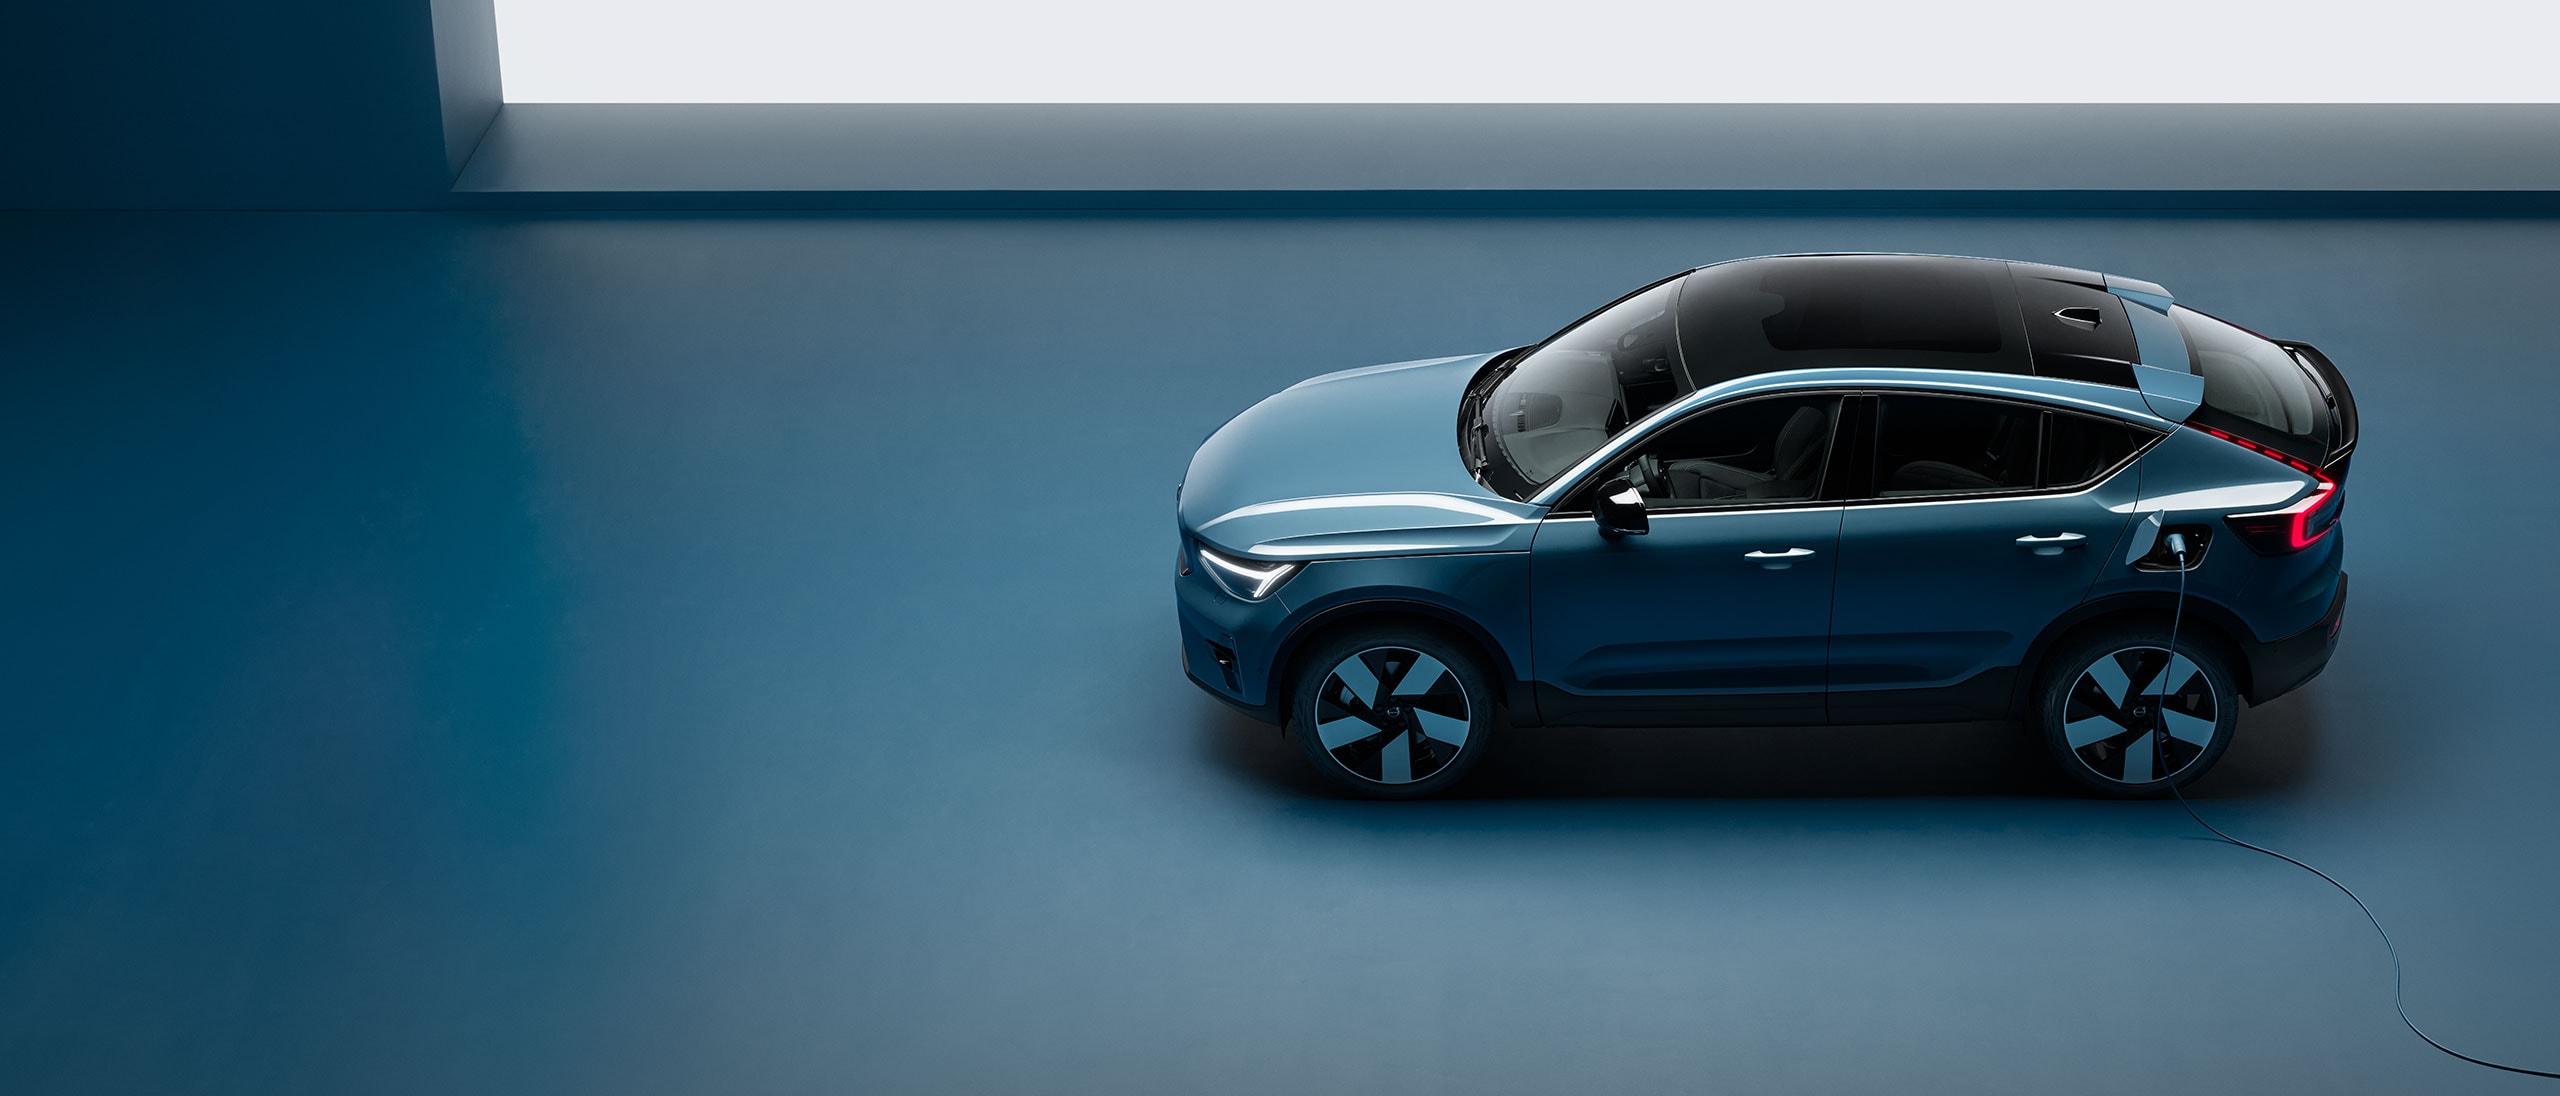 Ein Elektroauto von Volvo wird mit einem Ladekabel in einem Innenraum aufgeladen.